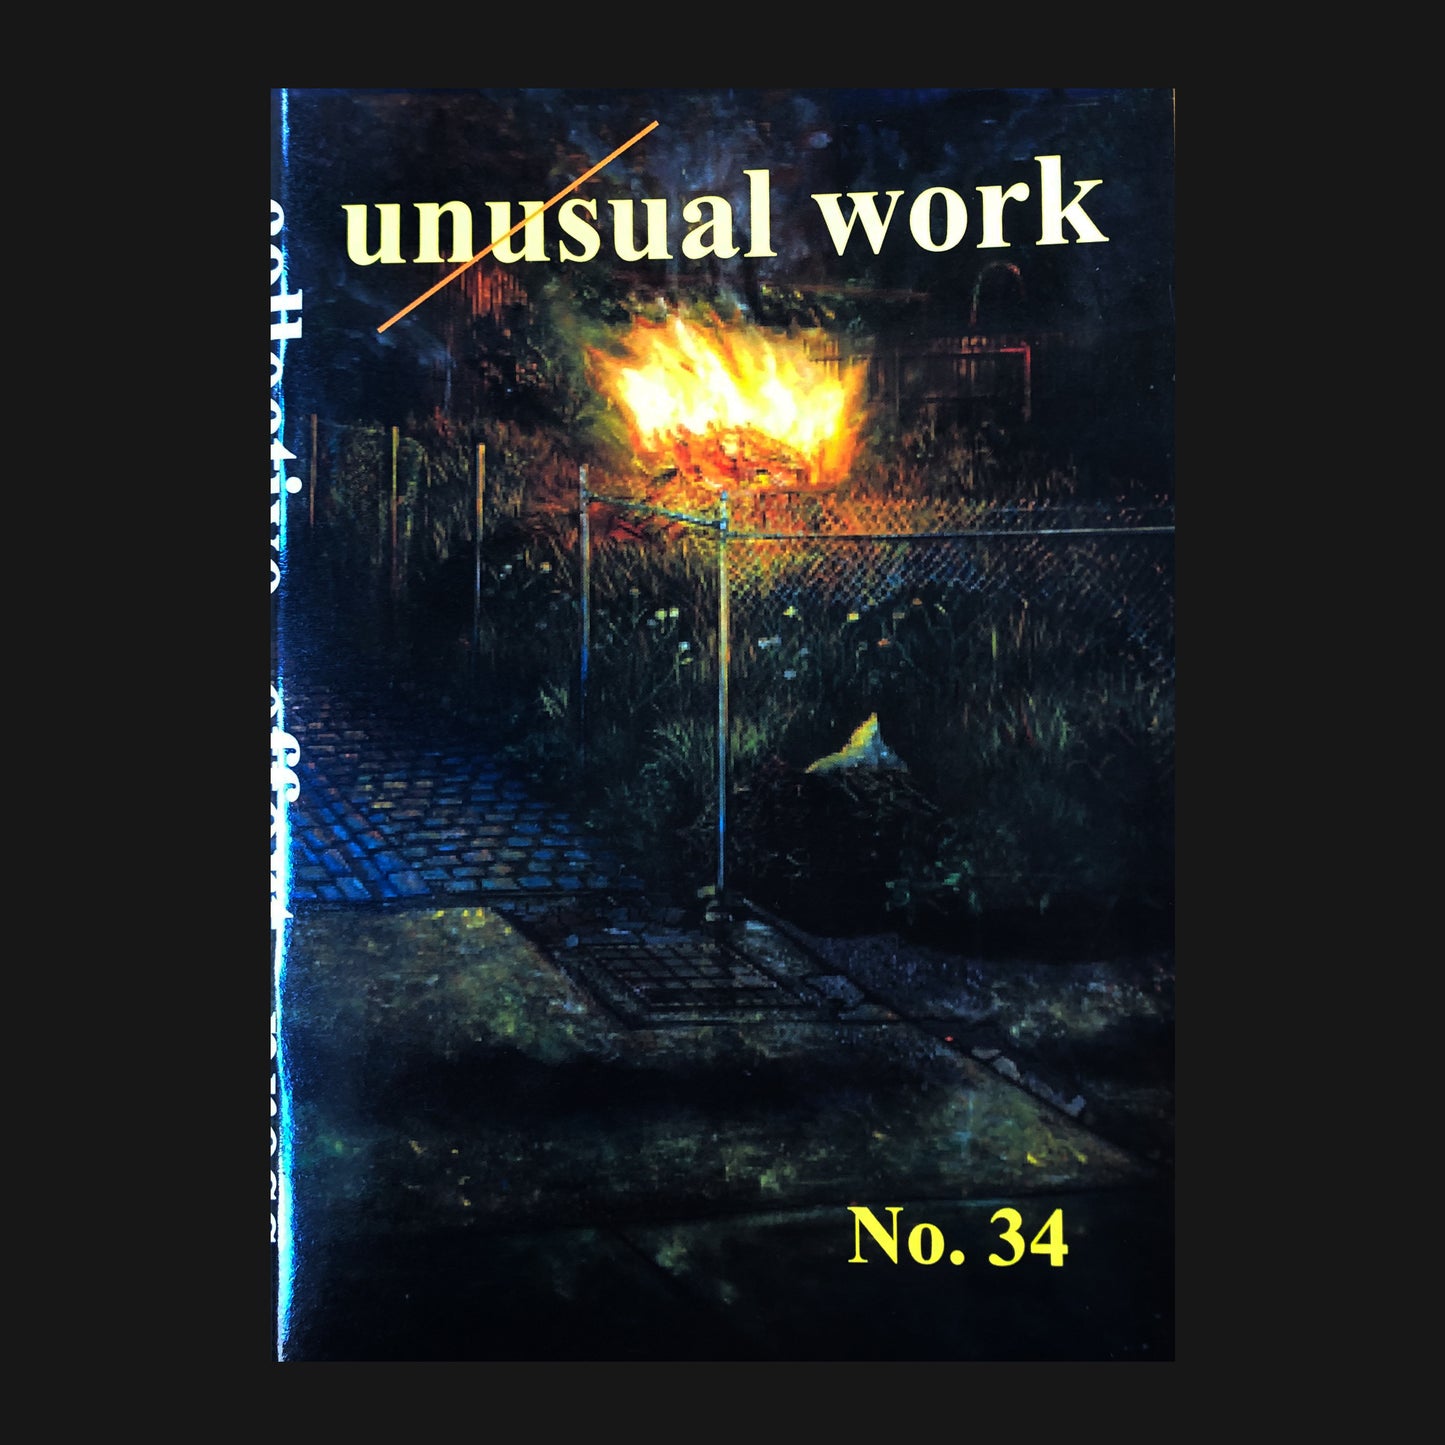 UNUSUAL WORK - NO. 34